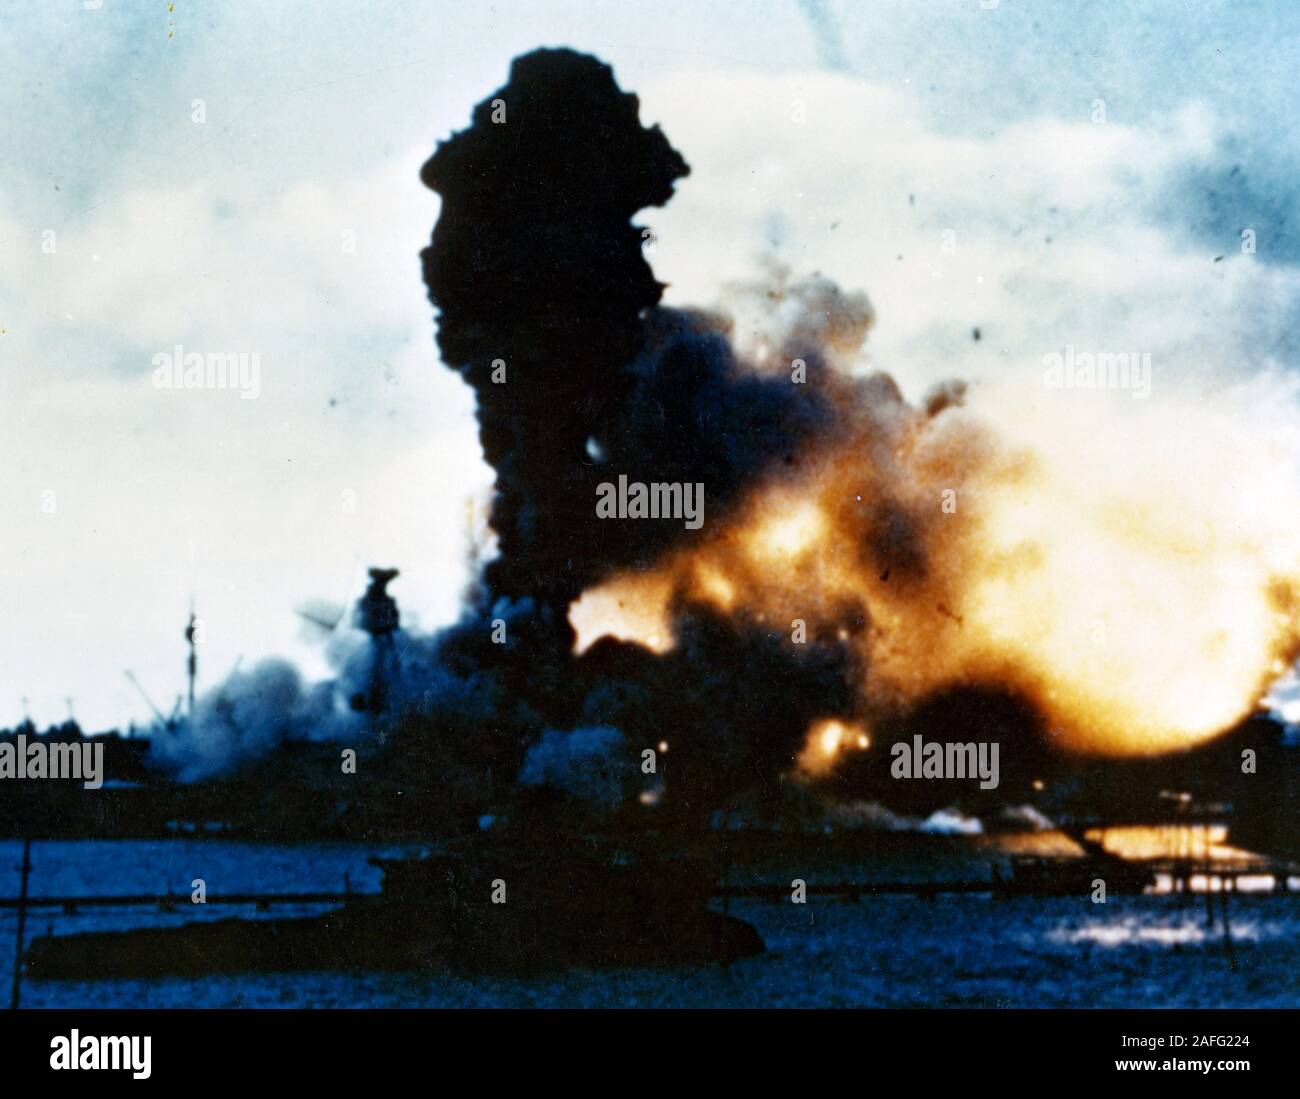 Attaque de Pearl Harbor, le 7 décembre 1941 - Les magazines de l'USS Arizona (BB-39) exploser après qu'elle a été touchée par une bombe japonaise, 7 décembre 1941. Banque D'Images